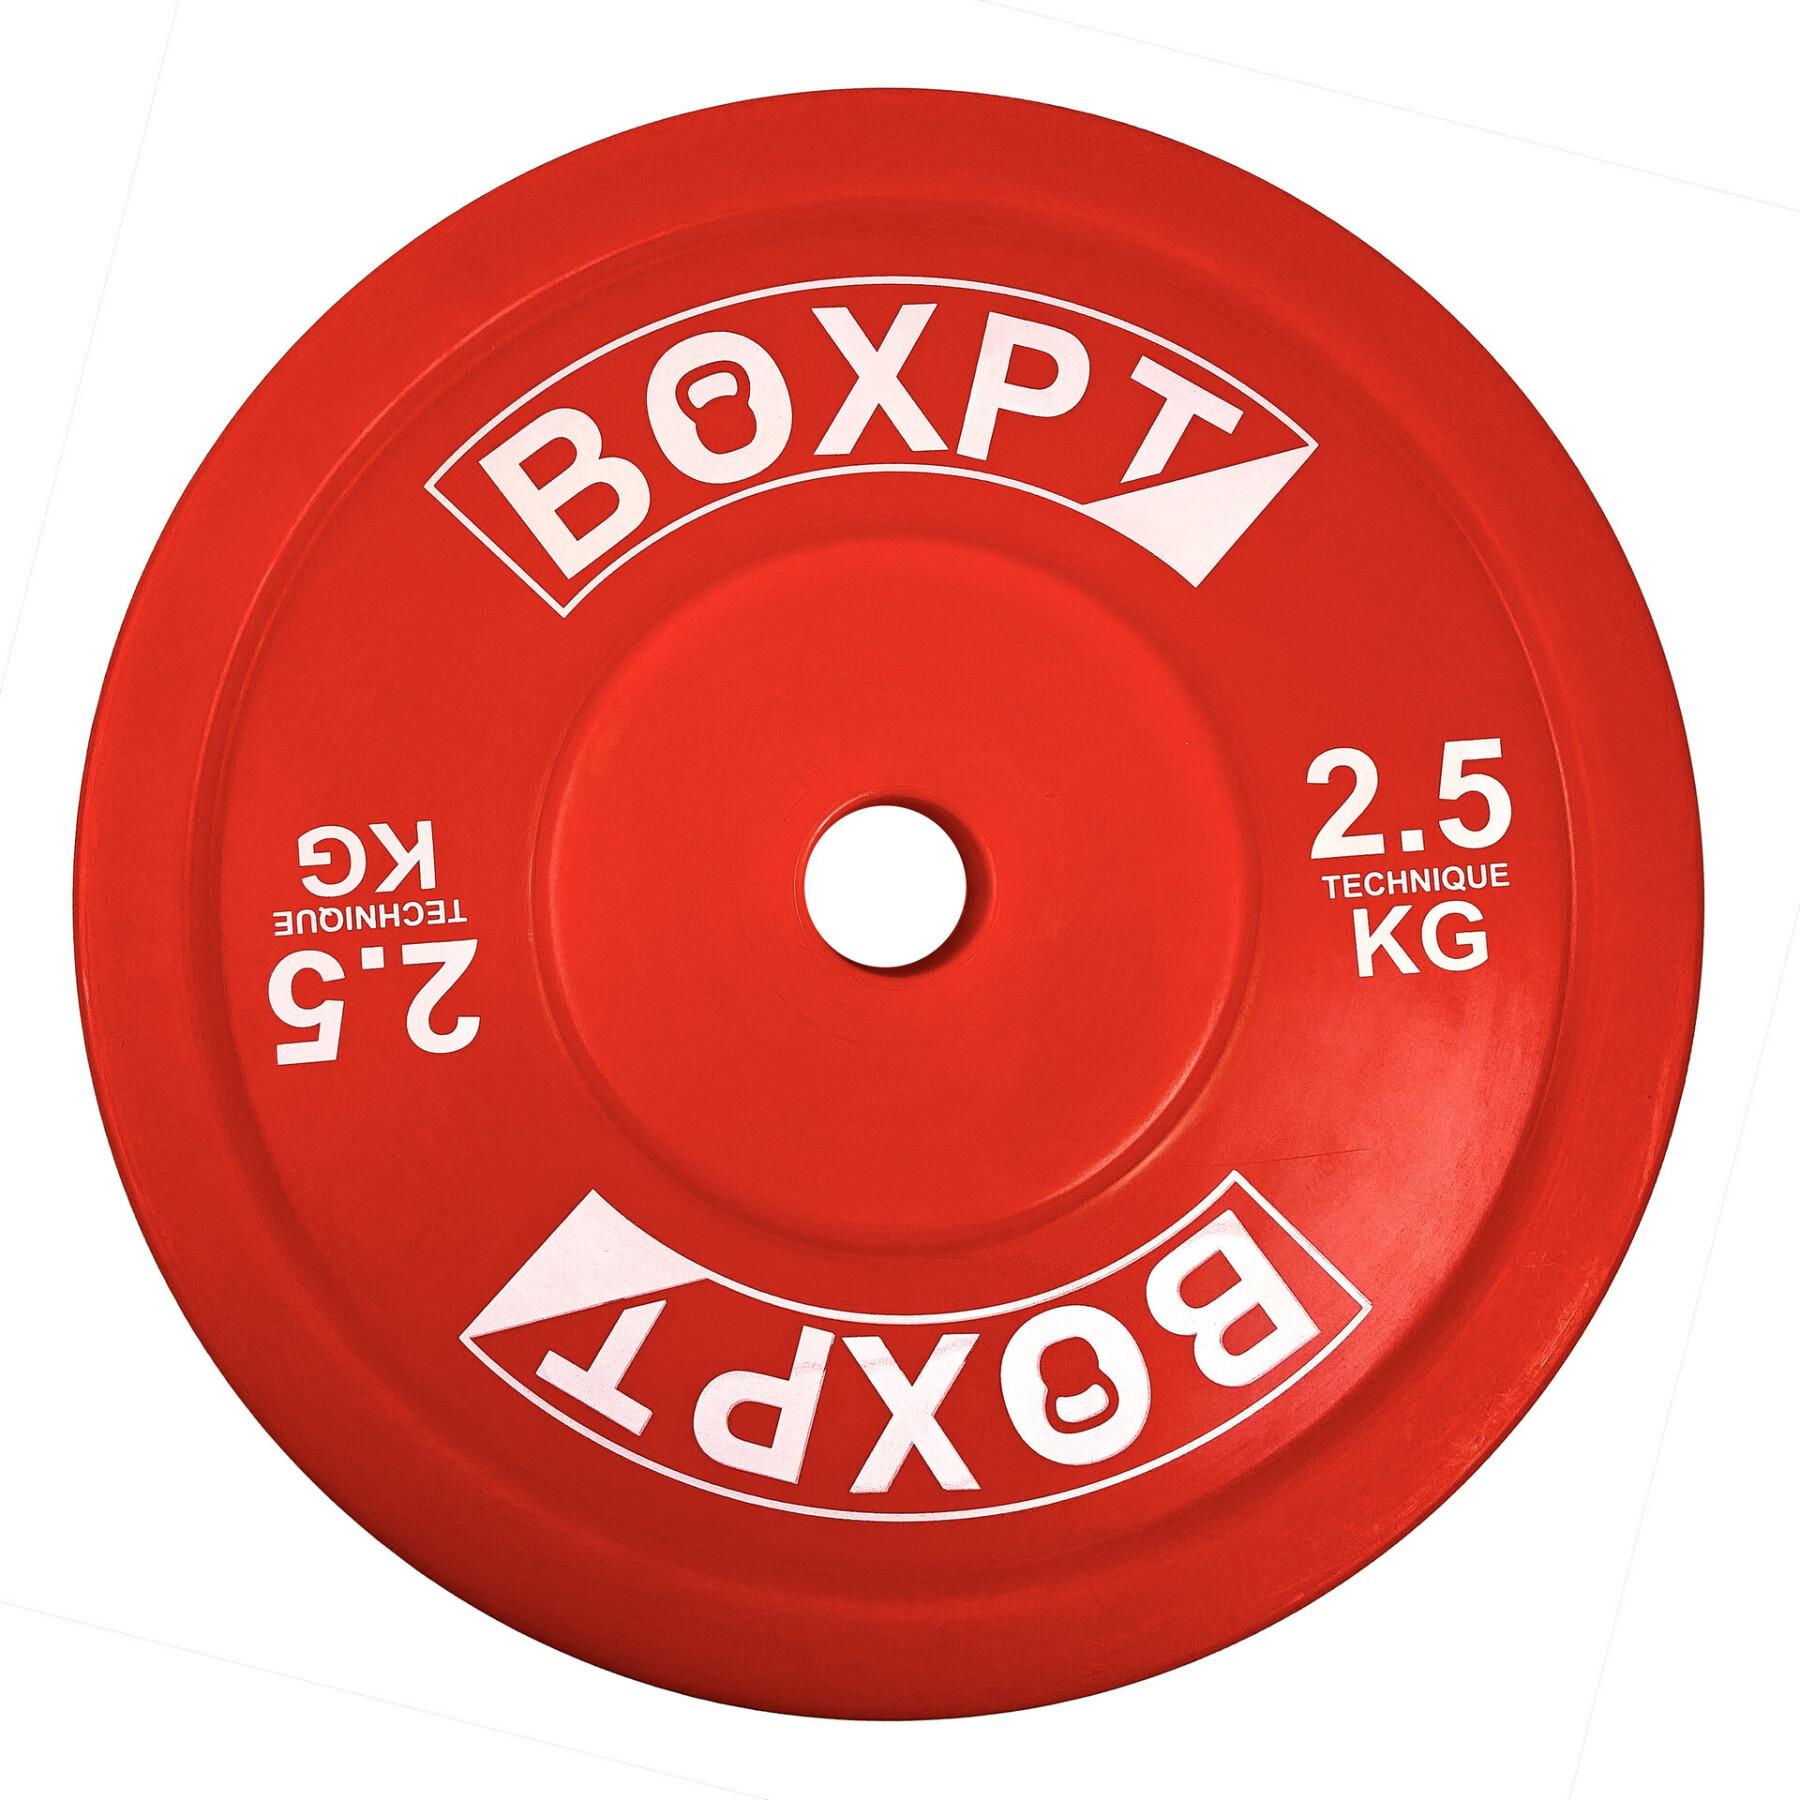 Skiva för kroppsbyggnad Boxpt Technique - 2,5 kg